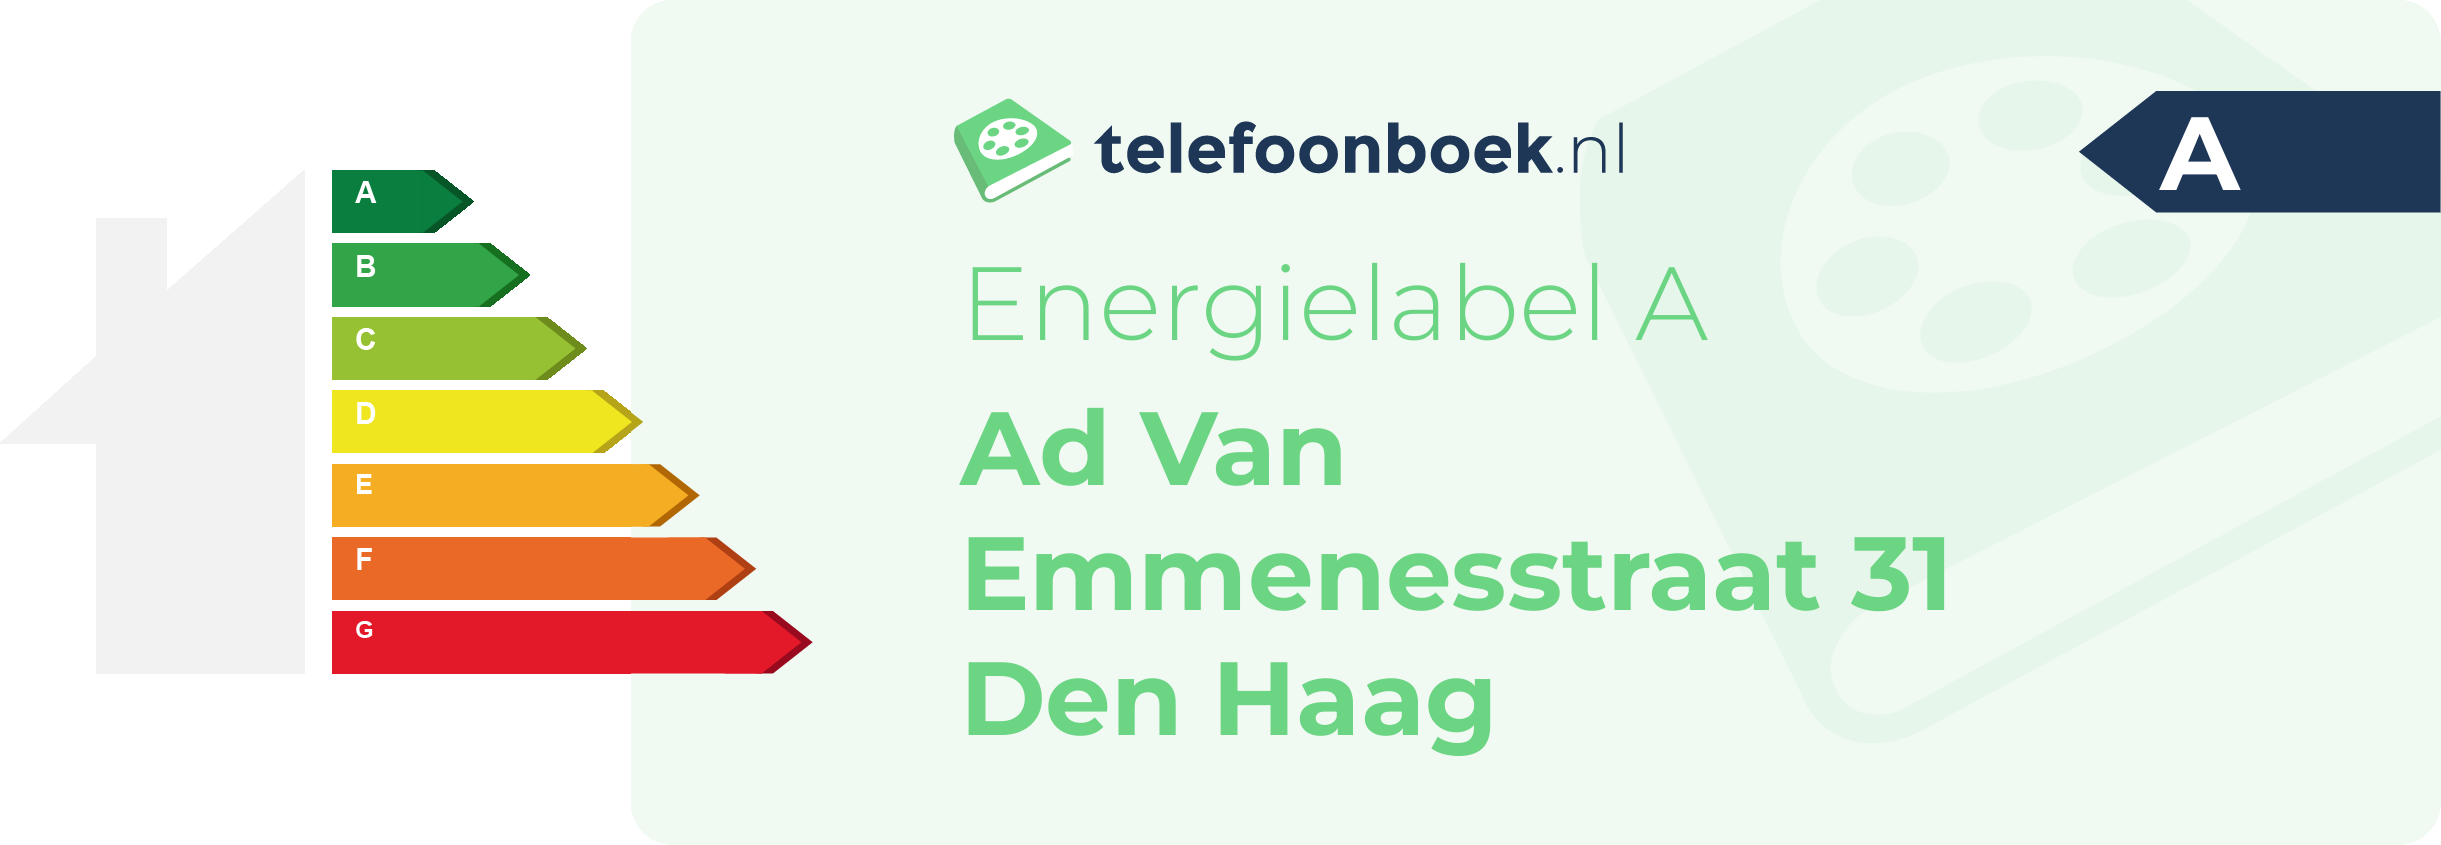 Energielabel Ad Van Emmenesstraat 31 Den Haag